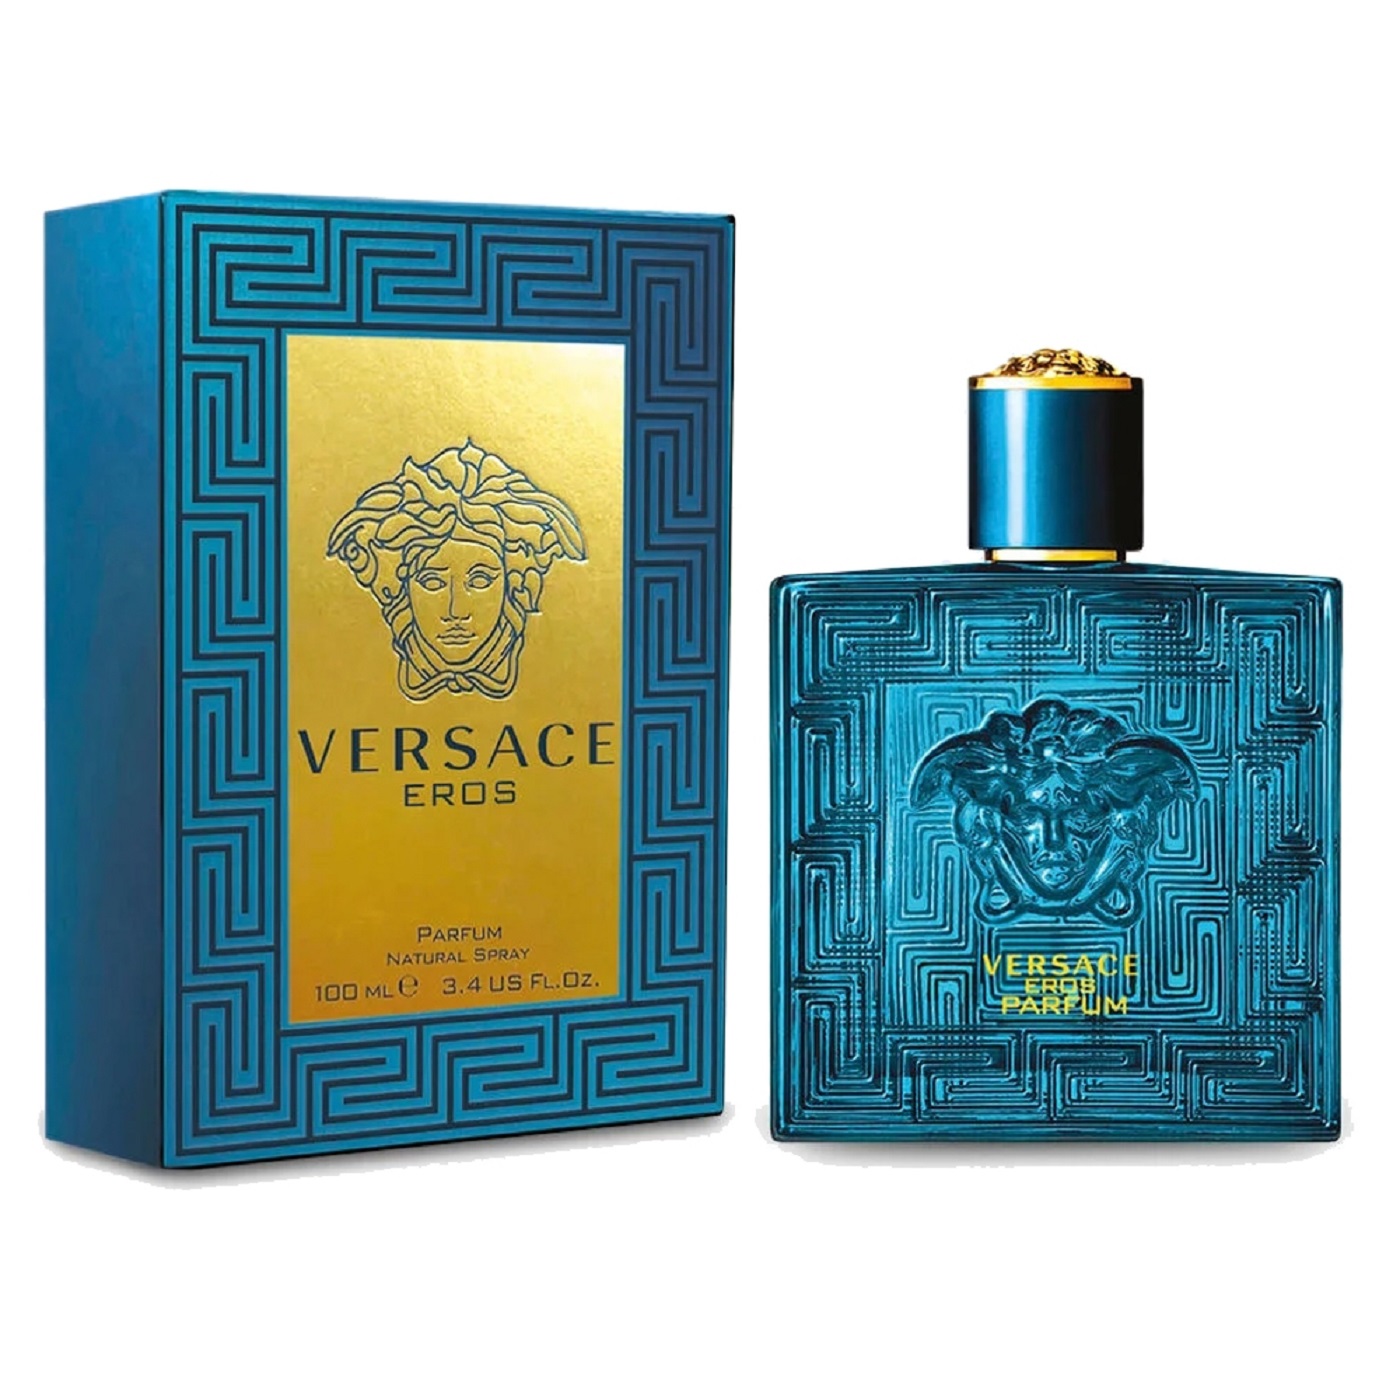 Versace Eros Men Parfum - Eshtir.com